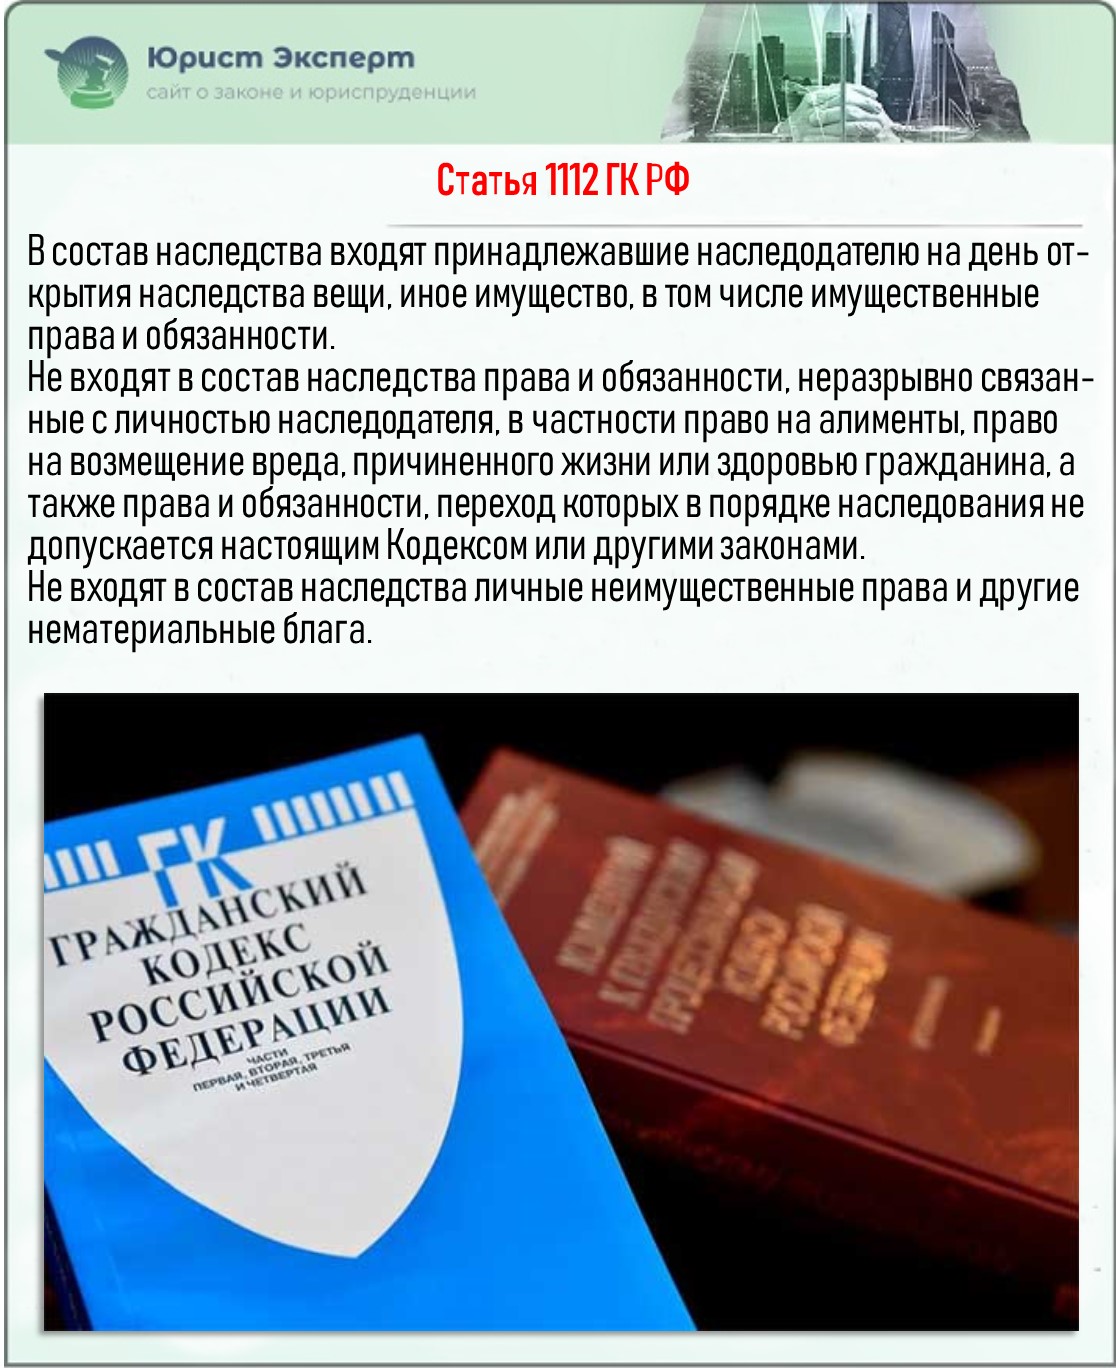 Статья 1112 ГК РФ